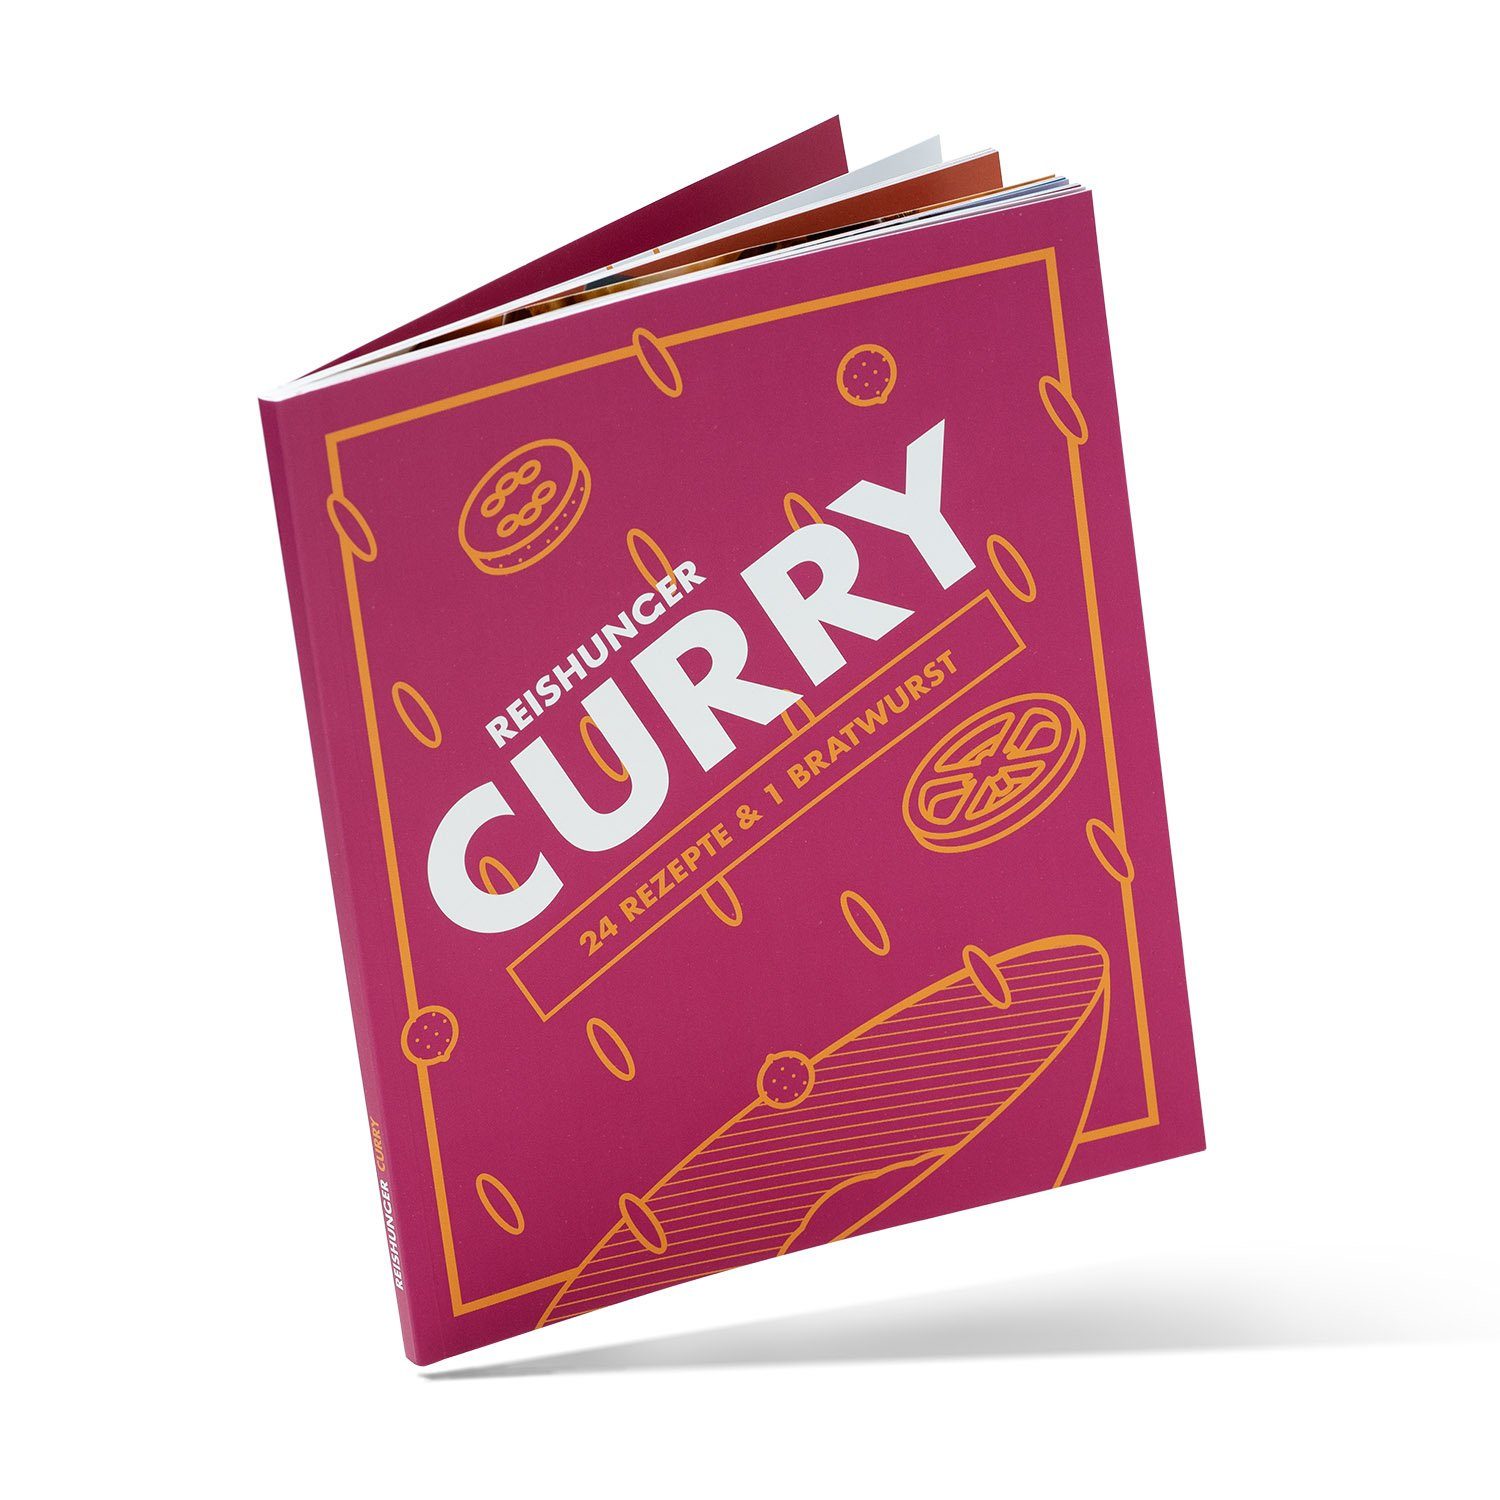 Curry Fleisch Fisch die Skizzenbuch & und Reishunger aller vegane mit funktionieren aus 25 Bratwurst, & Welt, Kochbuch, Reishunger vegetarische 24 Rezepte Rezepte auch 1